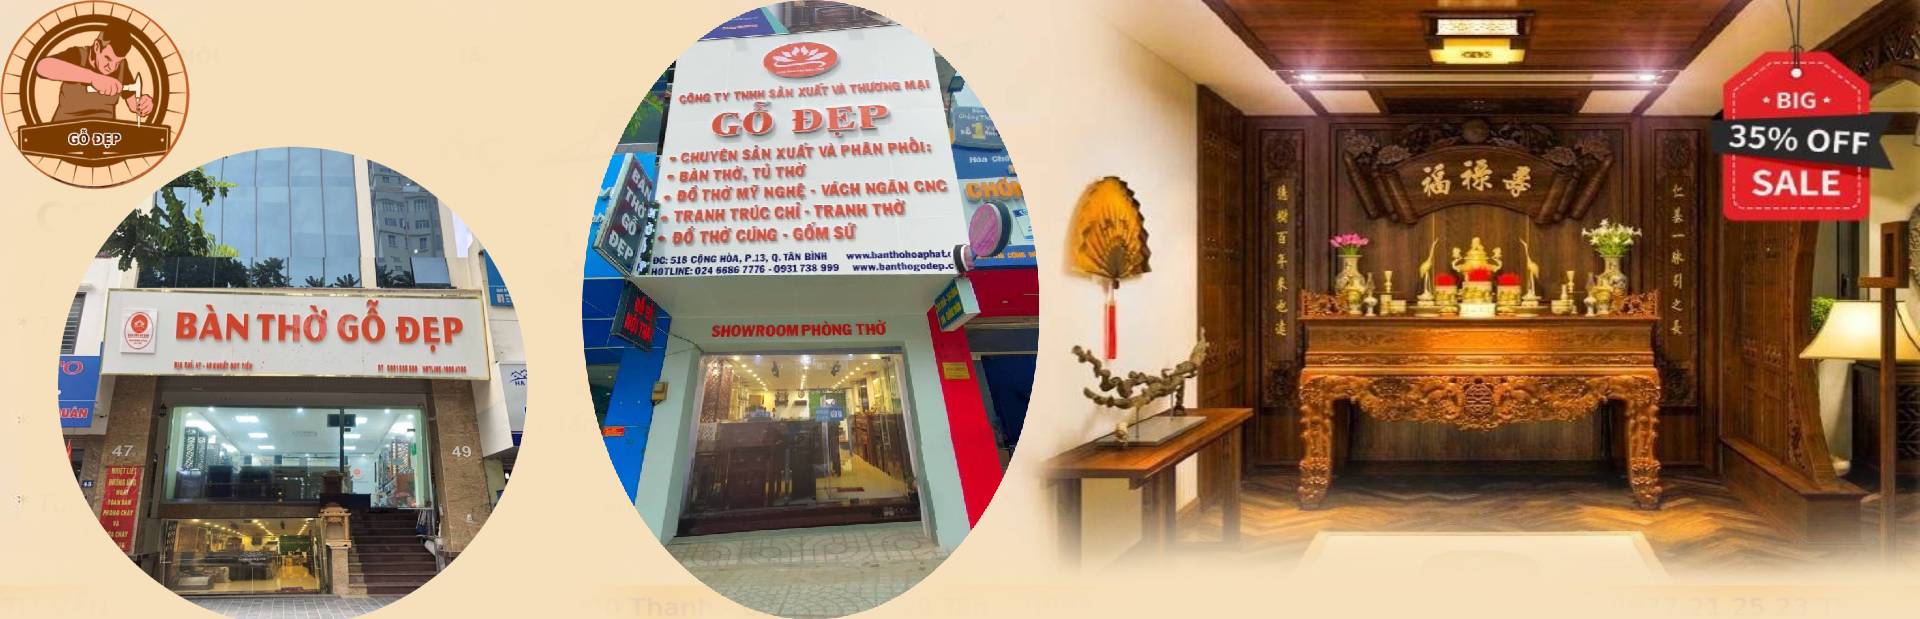 Cửa hàng bán các mẫu bàn thờ chất lượng tại Hà Nội và HCM